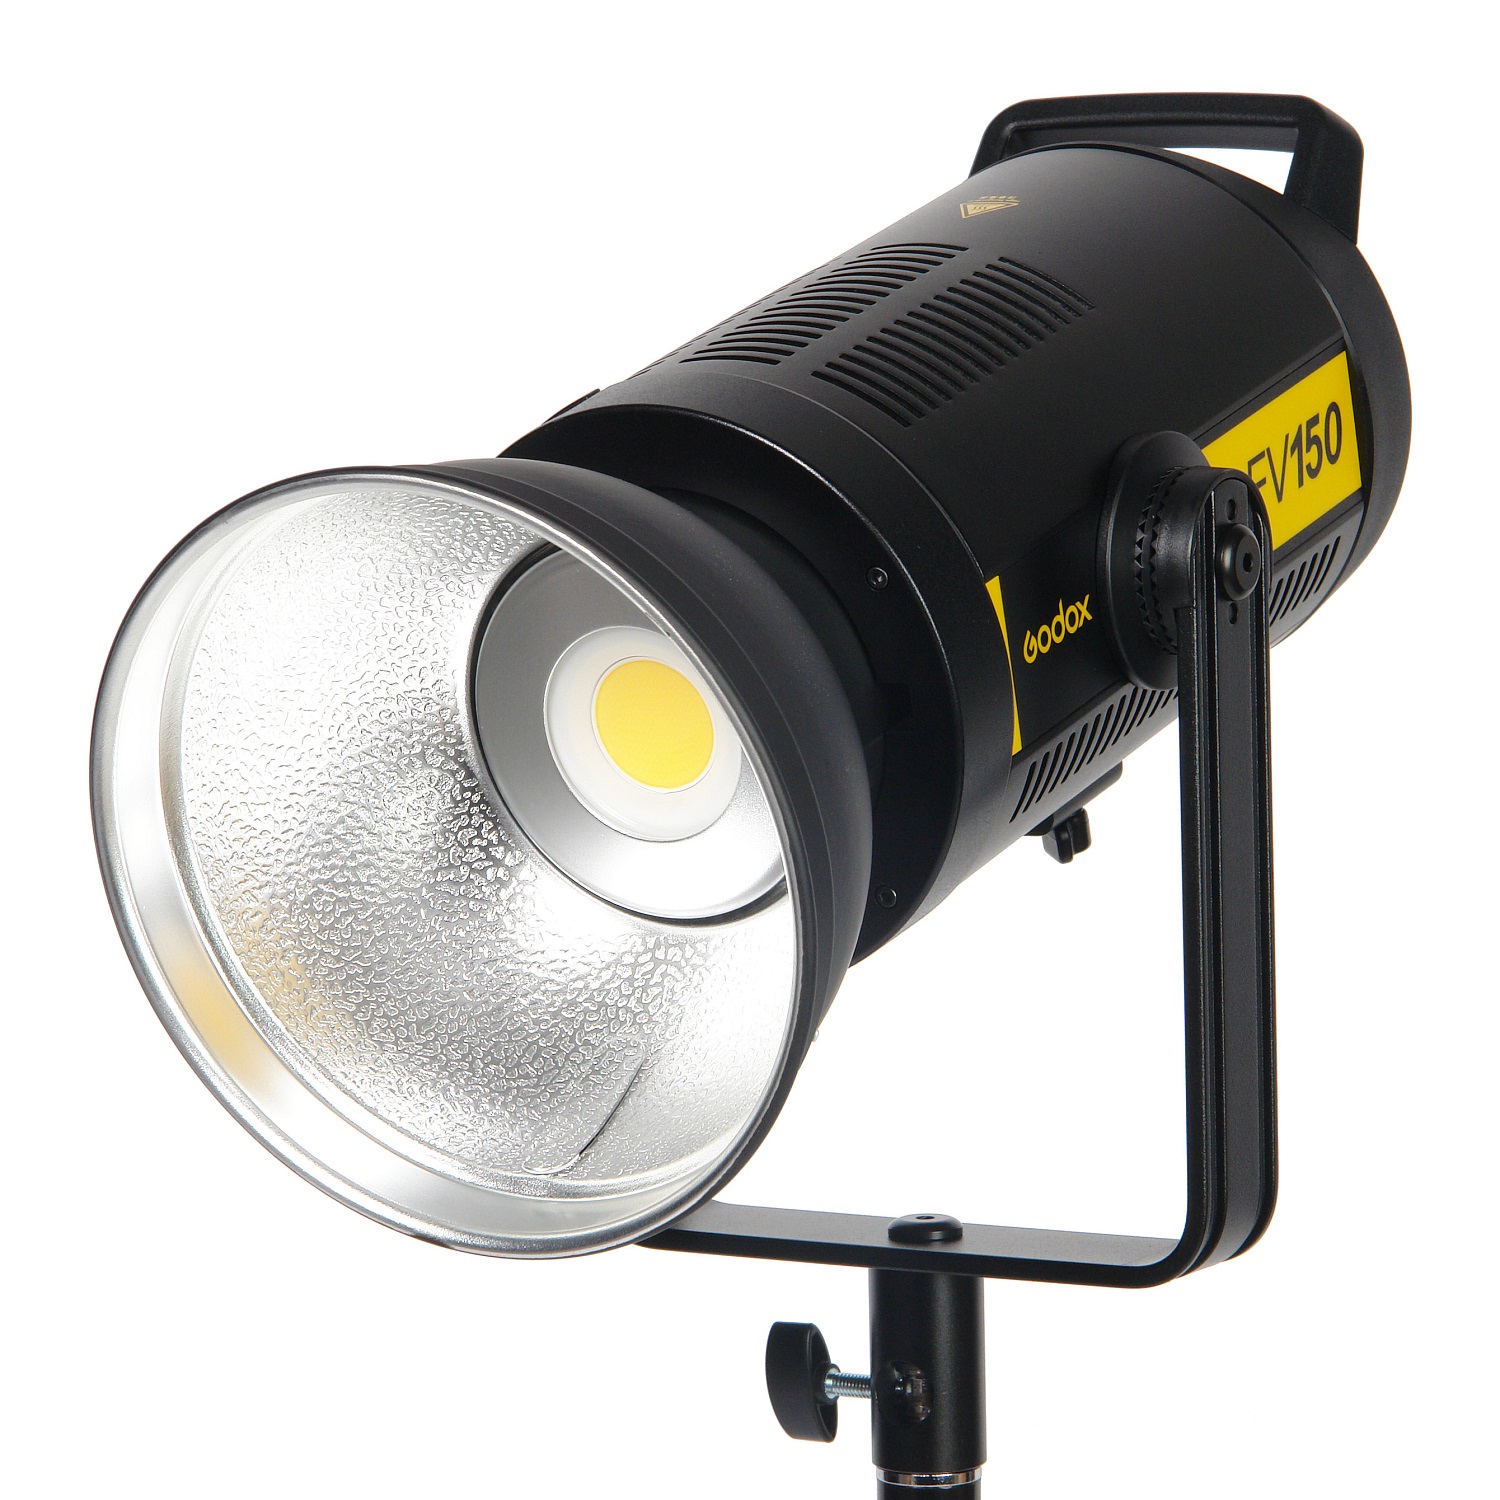 Осветитель светодиодный Godox FV150 с функцией вспышки - фото 1